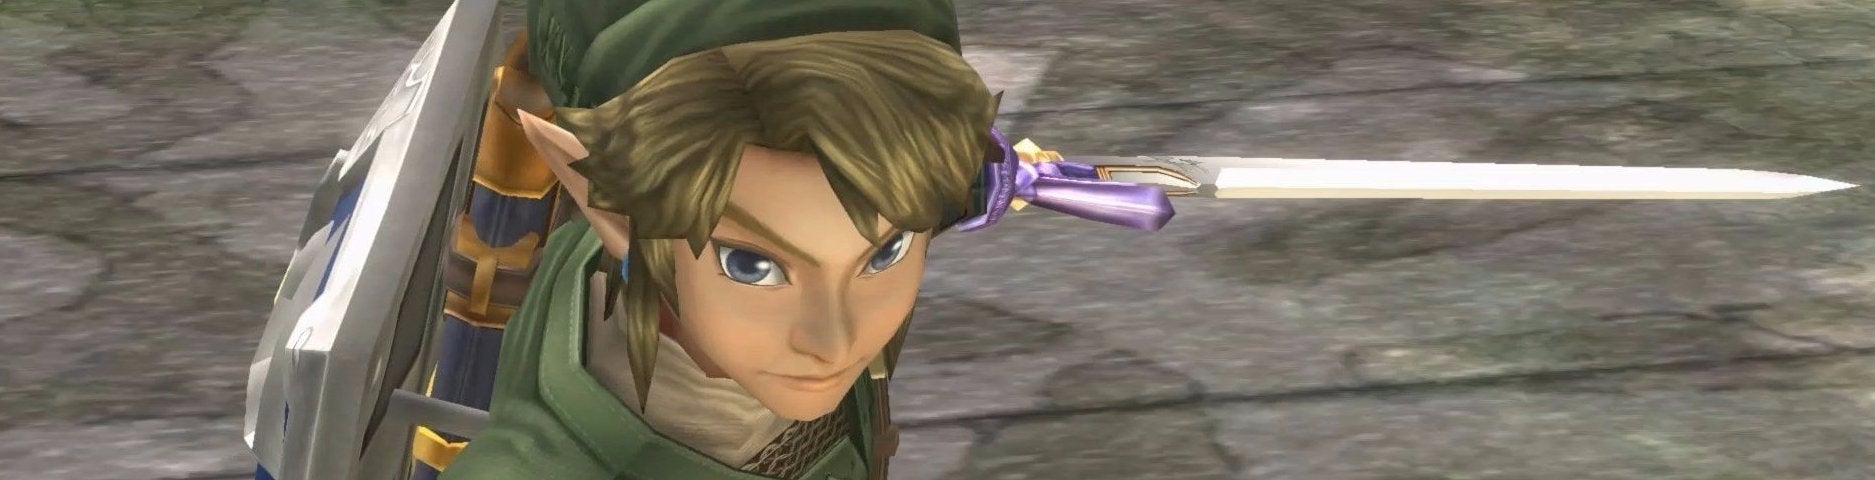 Imagem para Confronto: The Legend of Zelda: Twilight Princess HD